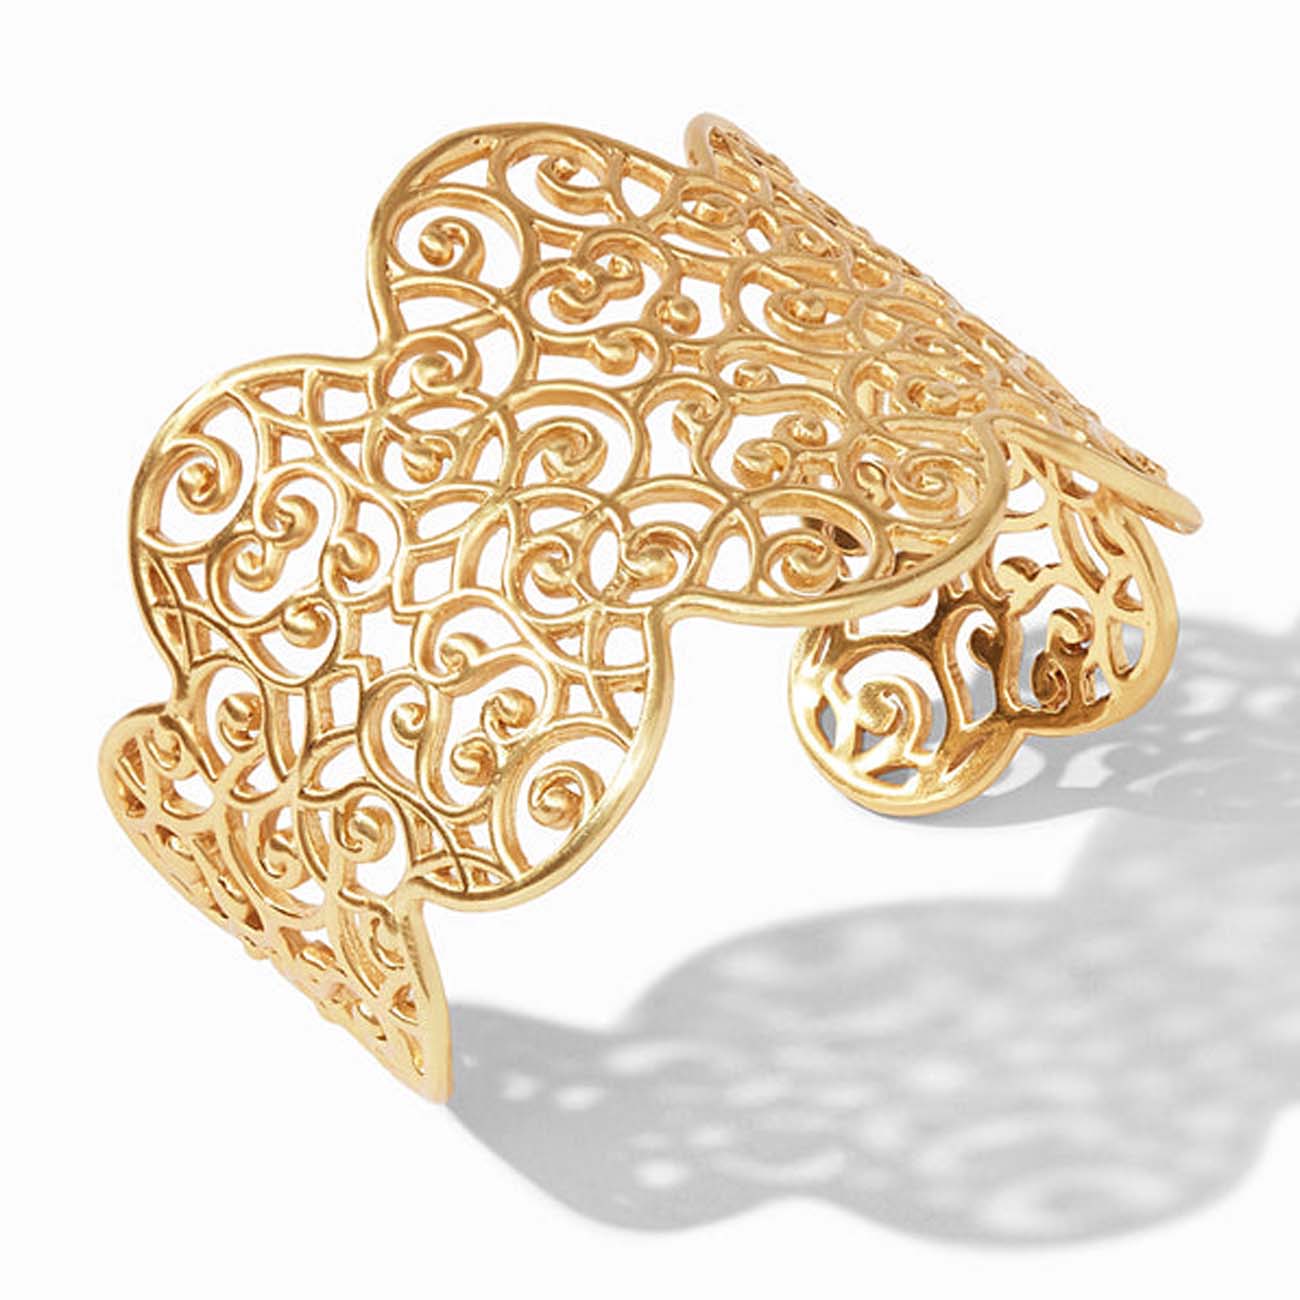 Candice Gold Cuff Bracelet in Gold Filigree